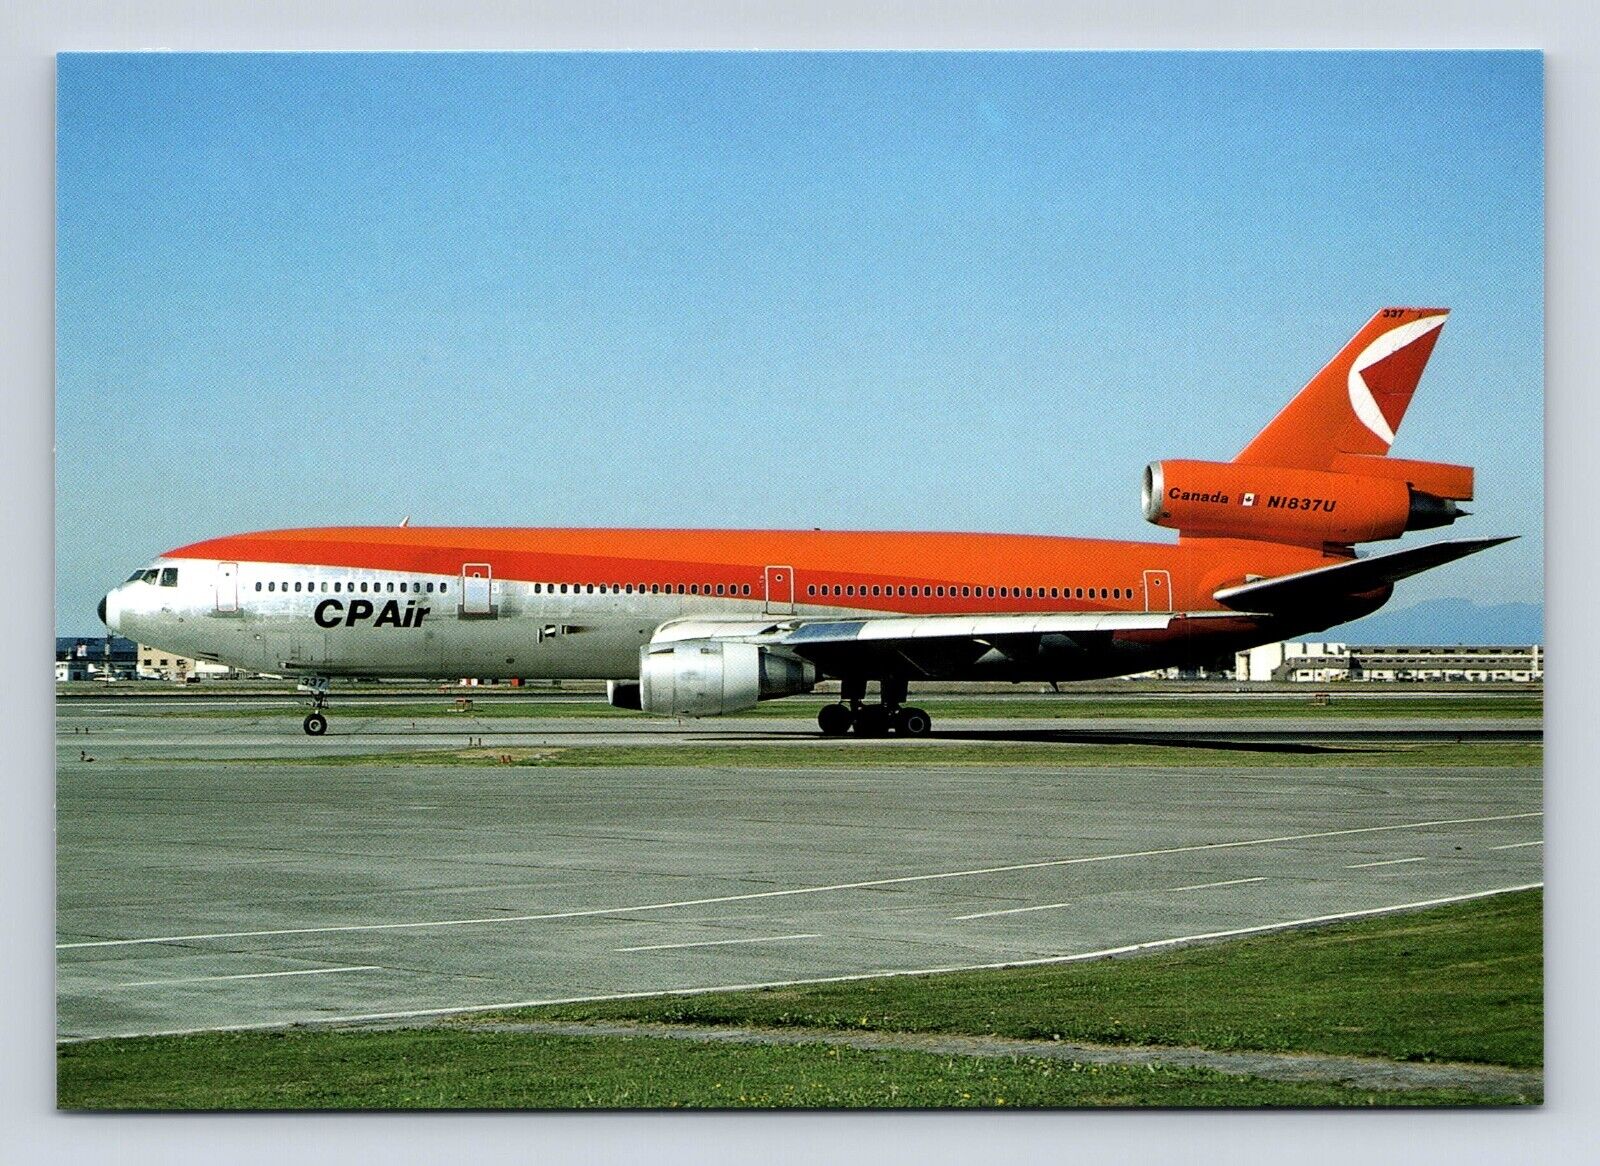 CP Air McDonnell Douglas DC-10-10 N1837U cn 47969/80   Airplane Postcard Vtg A5